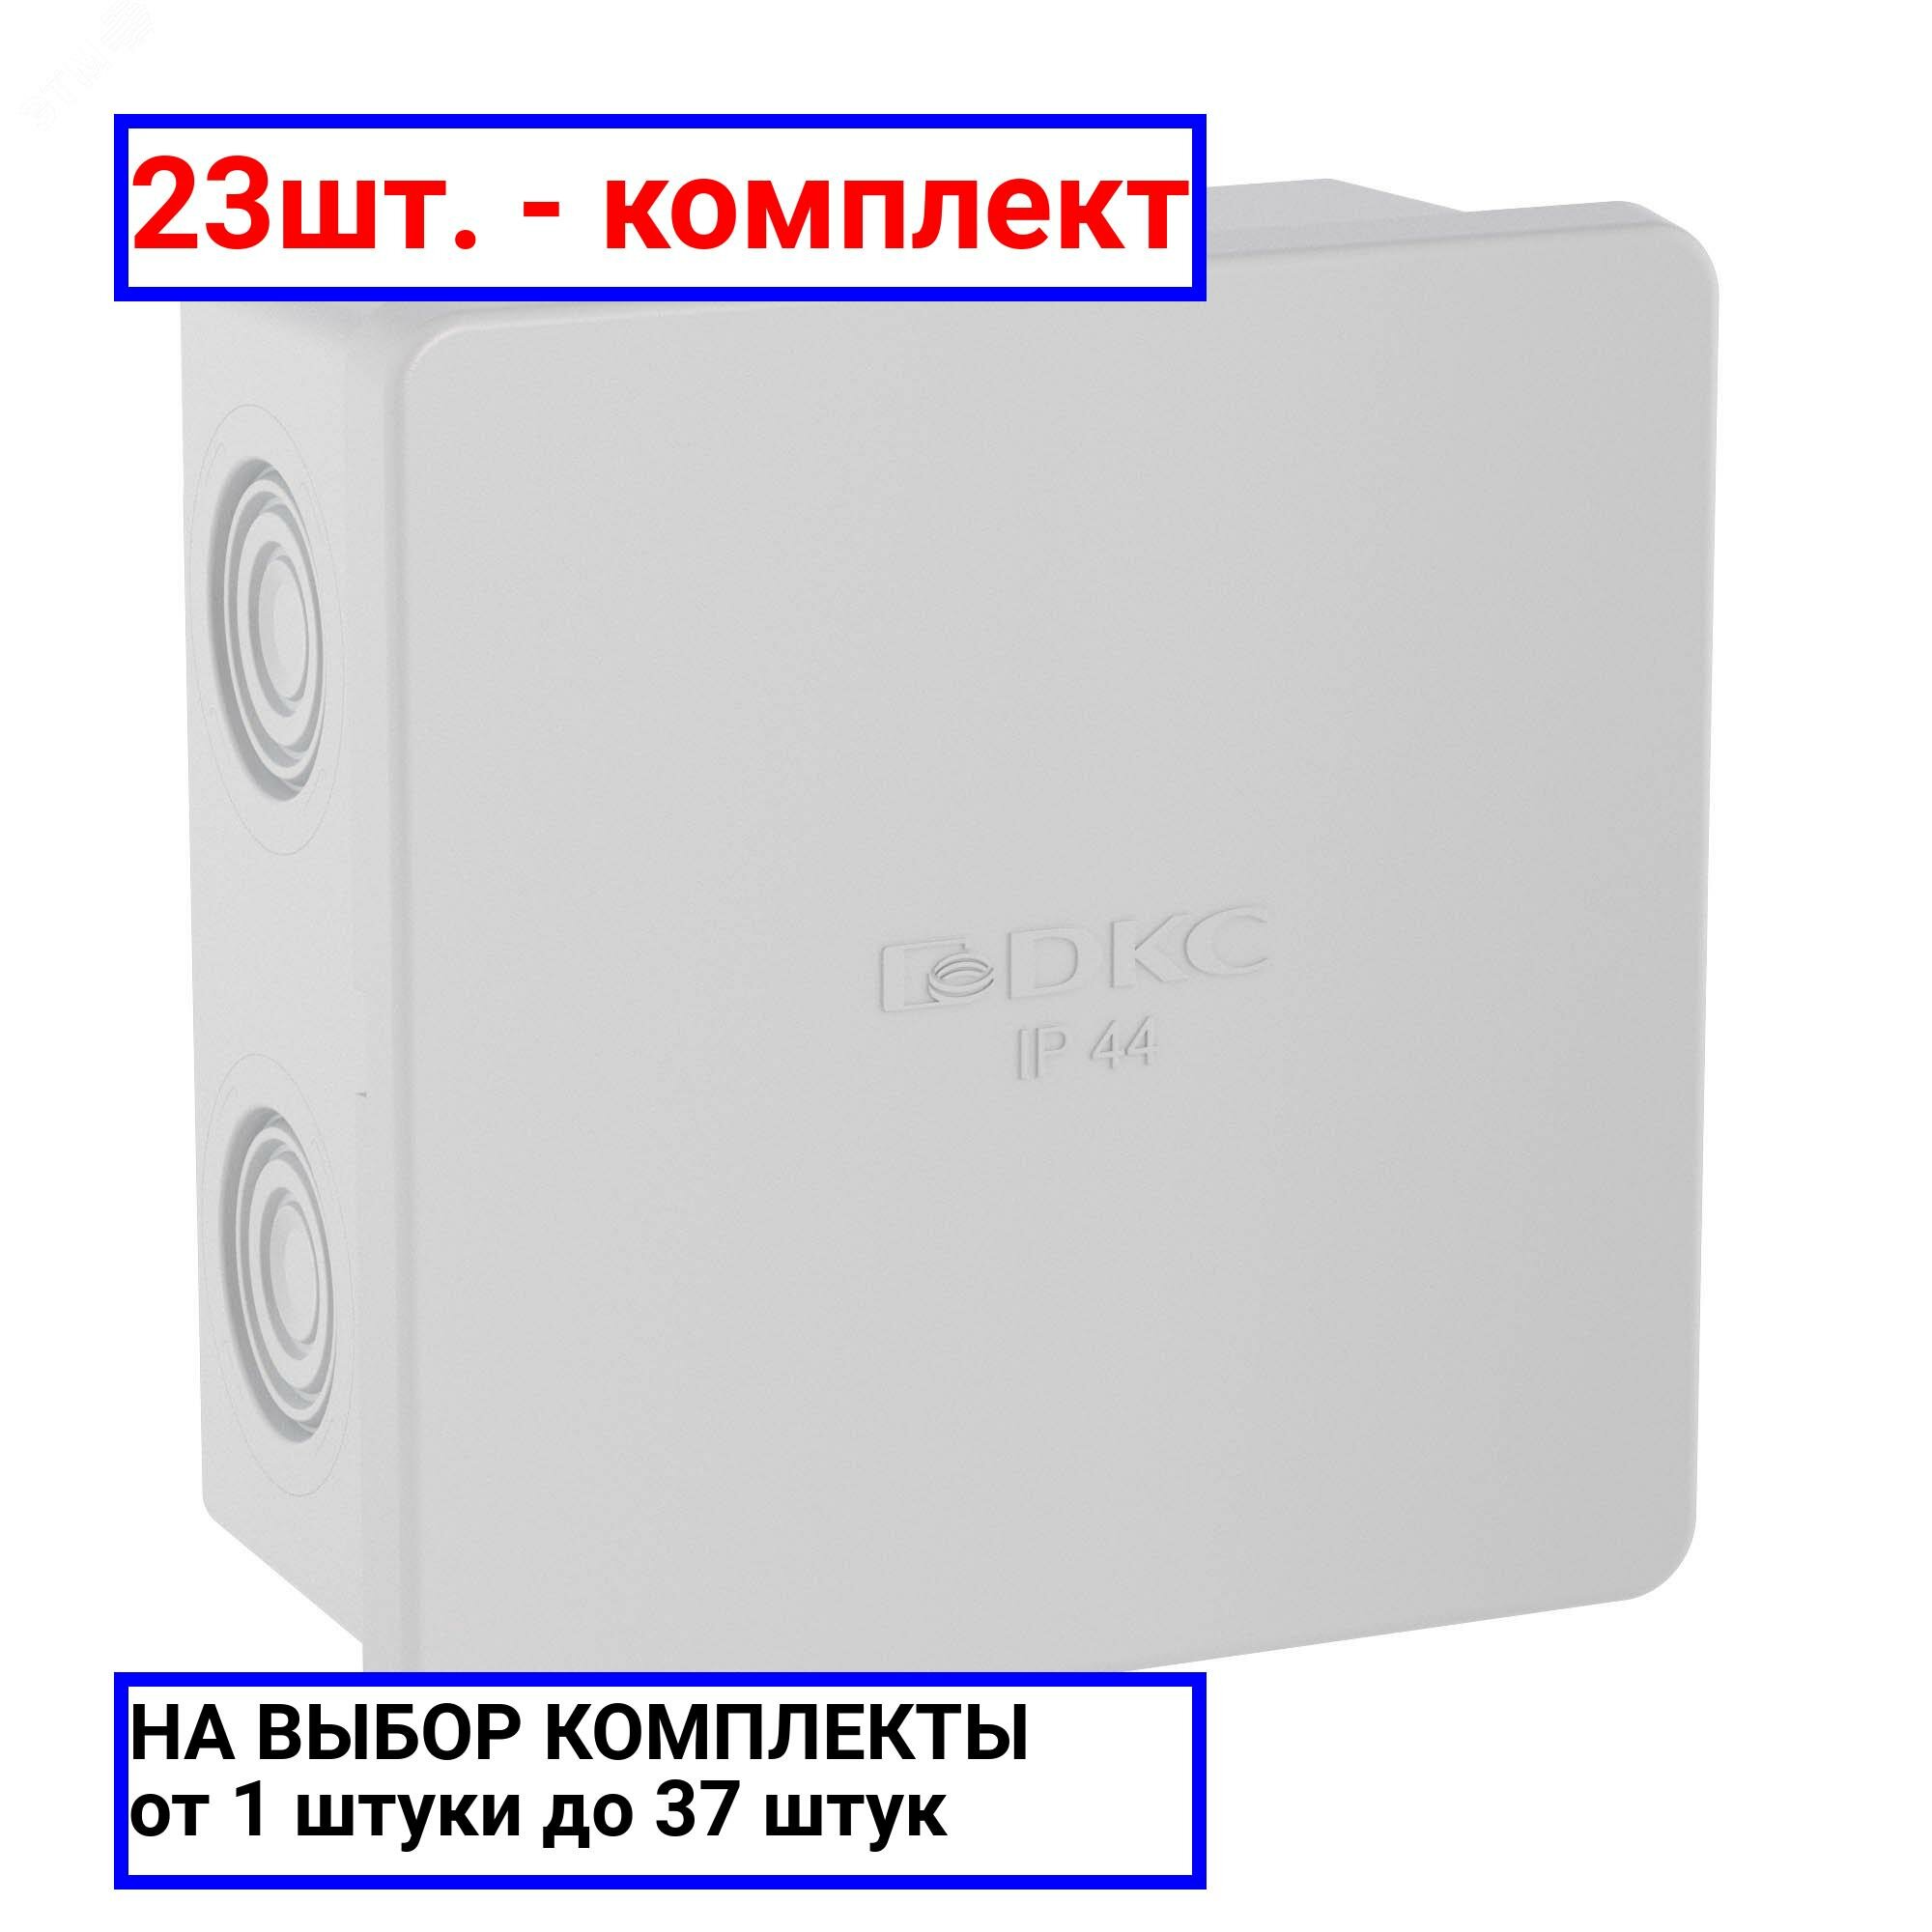 23шт. - Коробка распределительная 80х80х40мм IP44 с кабельными вводами / DKC; арт. 53700; оригинал / - комплект 23шт